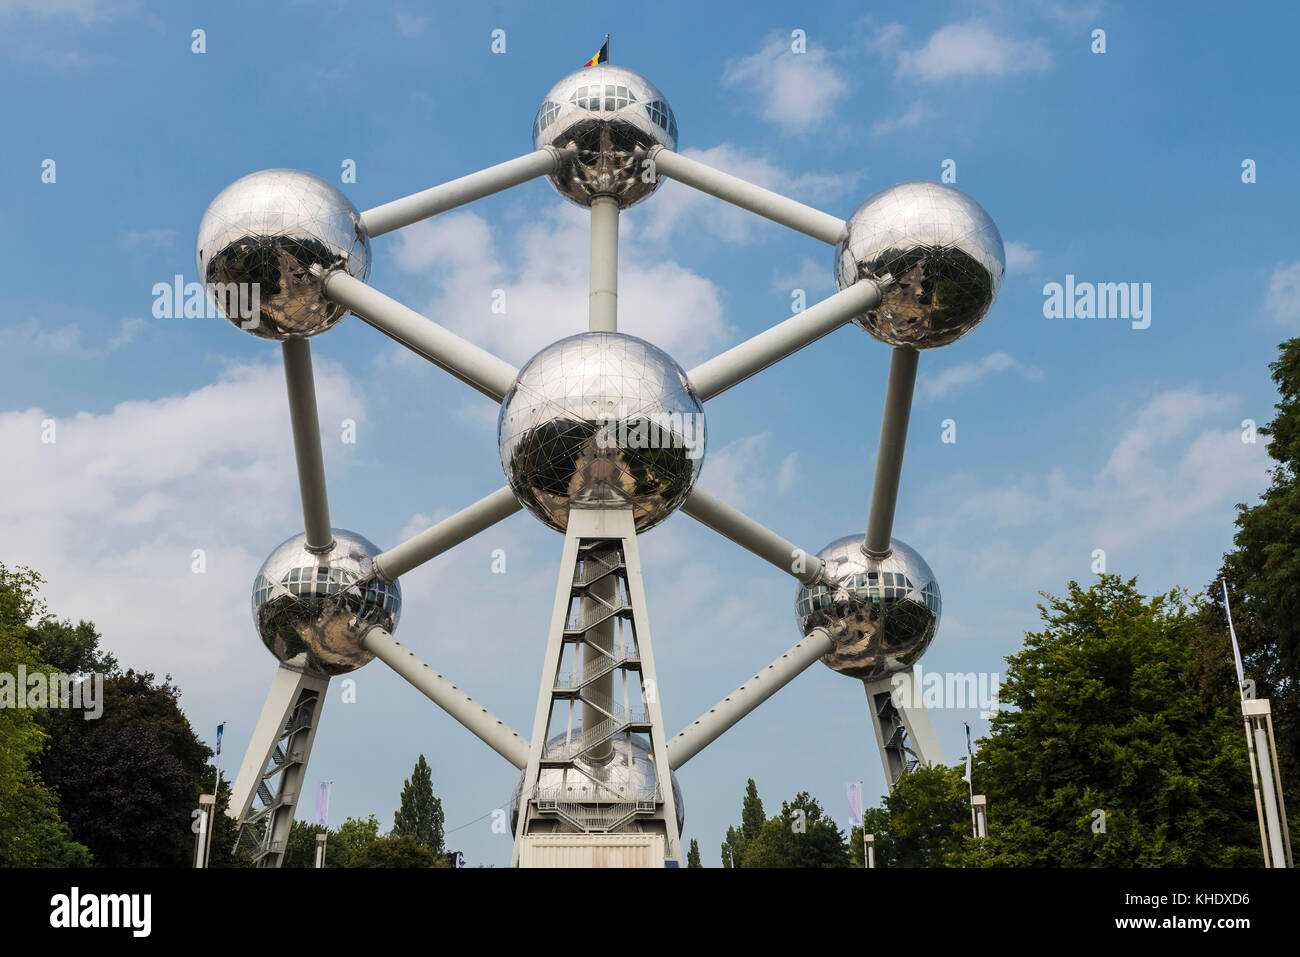 Brüssel, Belgien - 27 August 2017: Atomium, berühmten Struktur in Form eines Atoms, in das Messegelände in Brüssel, Belgien Stockfoto